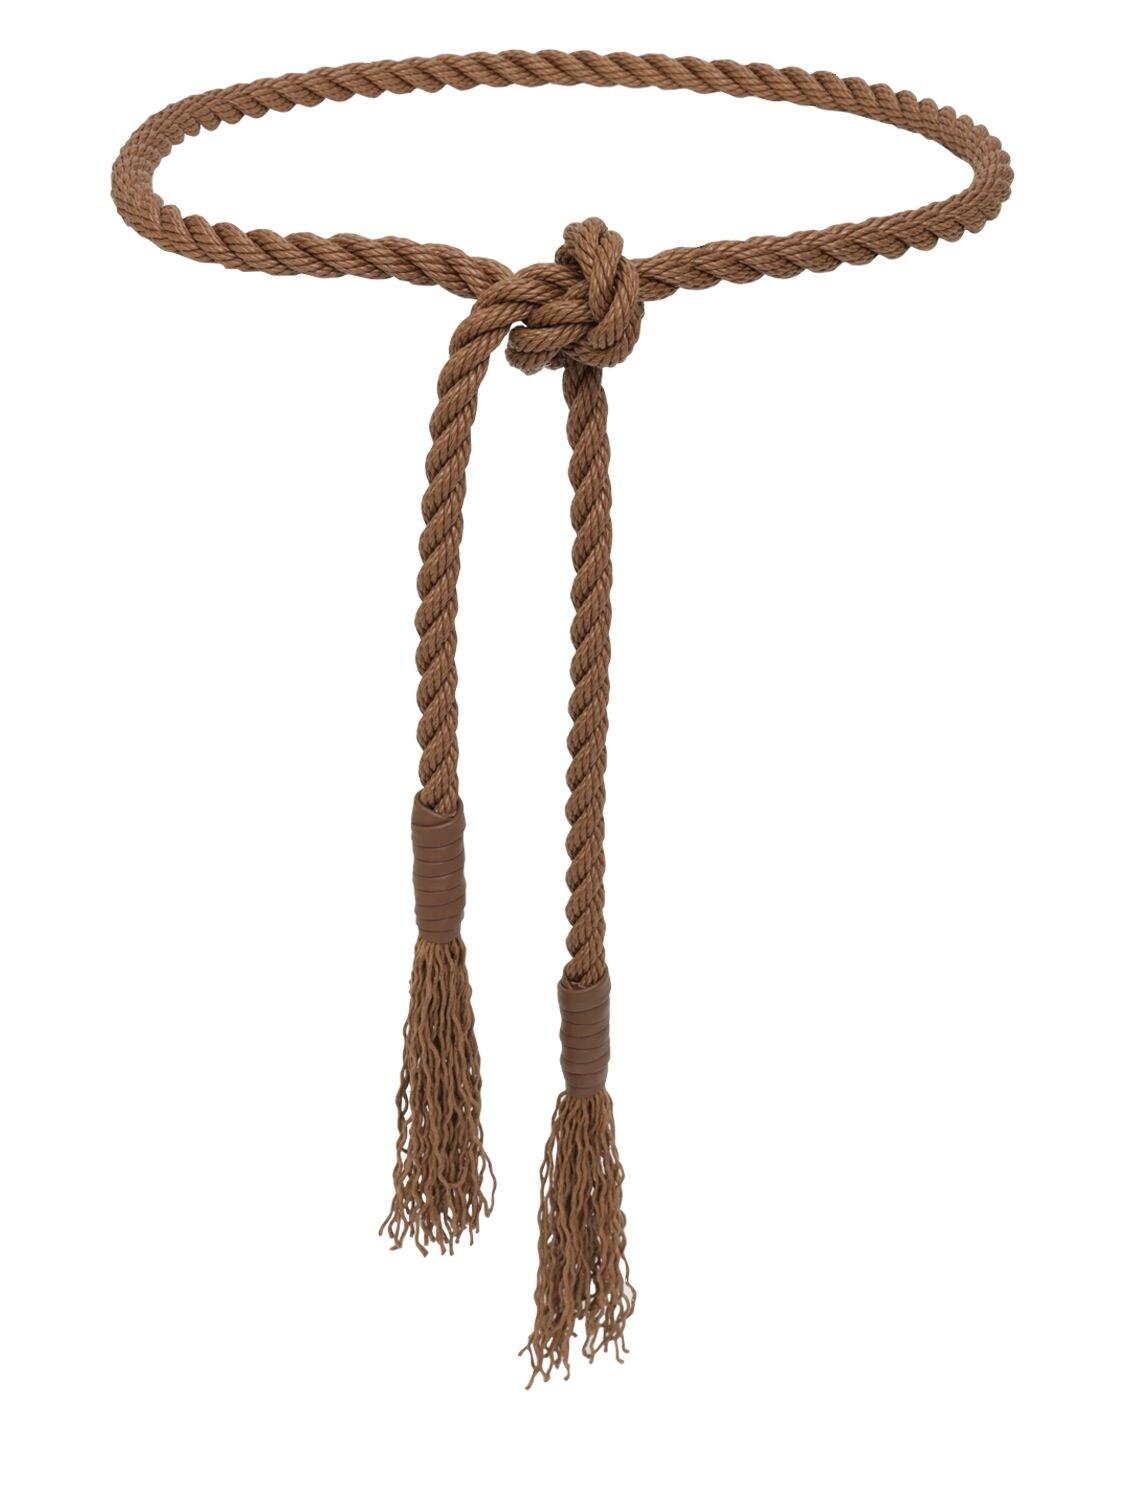 Max Mara High Waist Cotton Rope Belt in Brown | Lyst